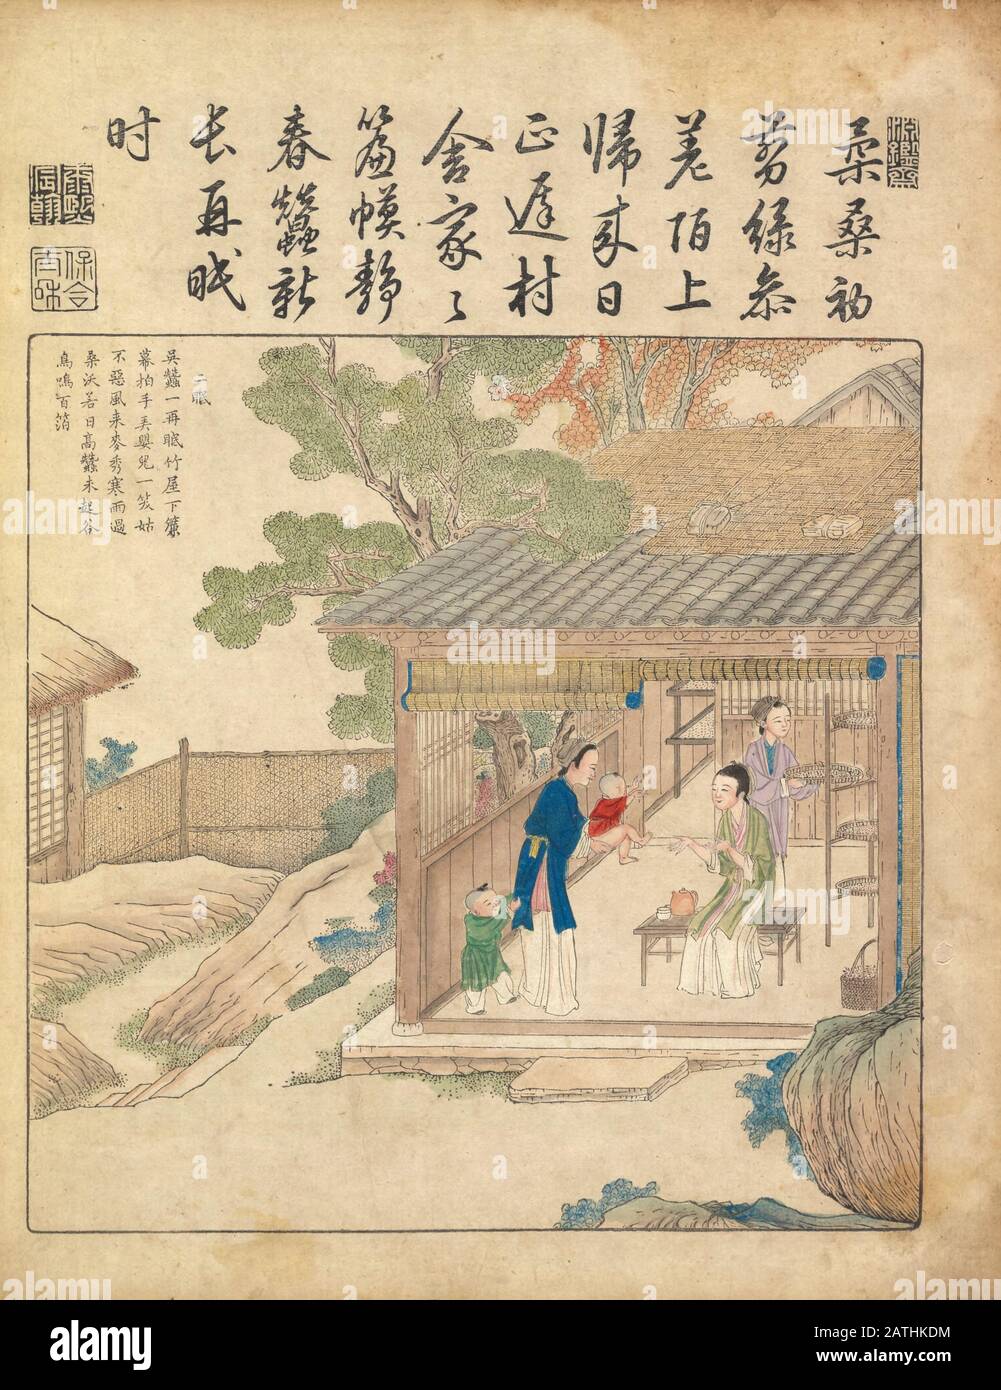 Chinesische Kunst aus dem 17. Jahrhundert täglich von Yu zhi geng zhi tu von Jiao, Bingzhen, 1696 Stockfoto